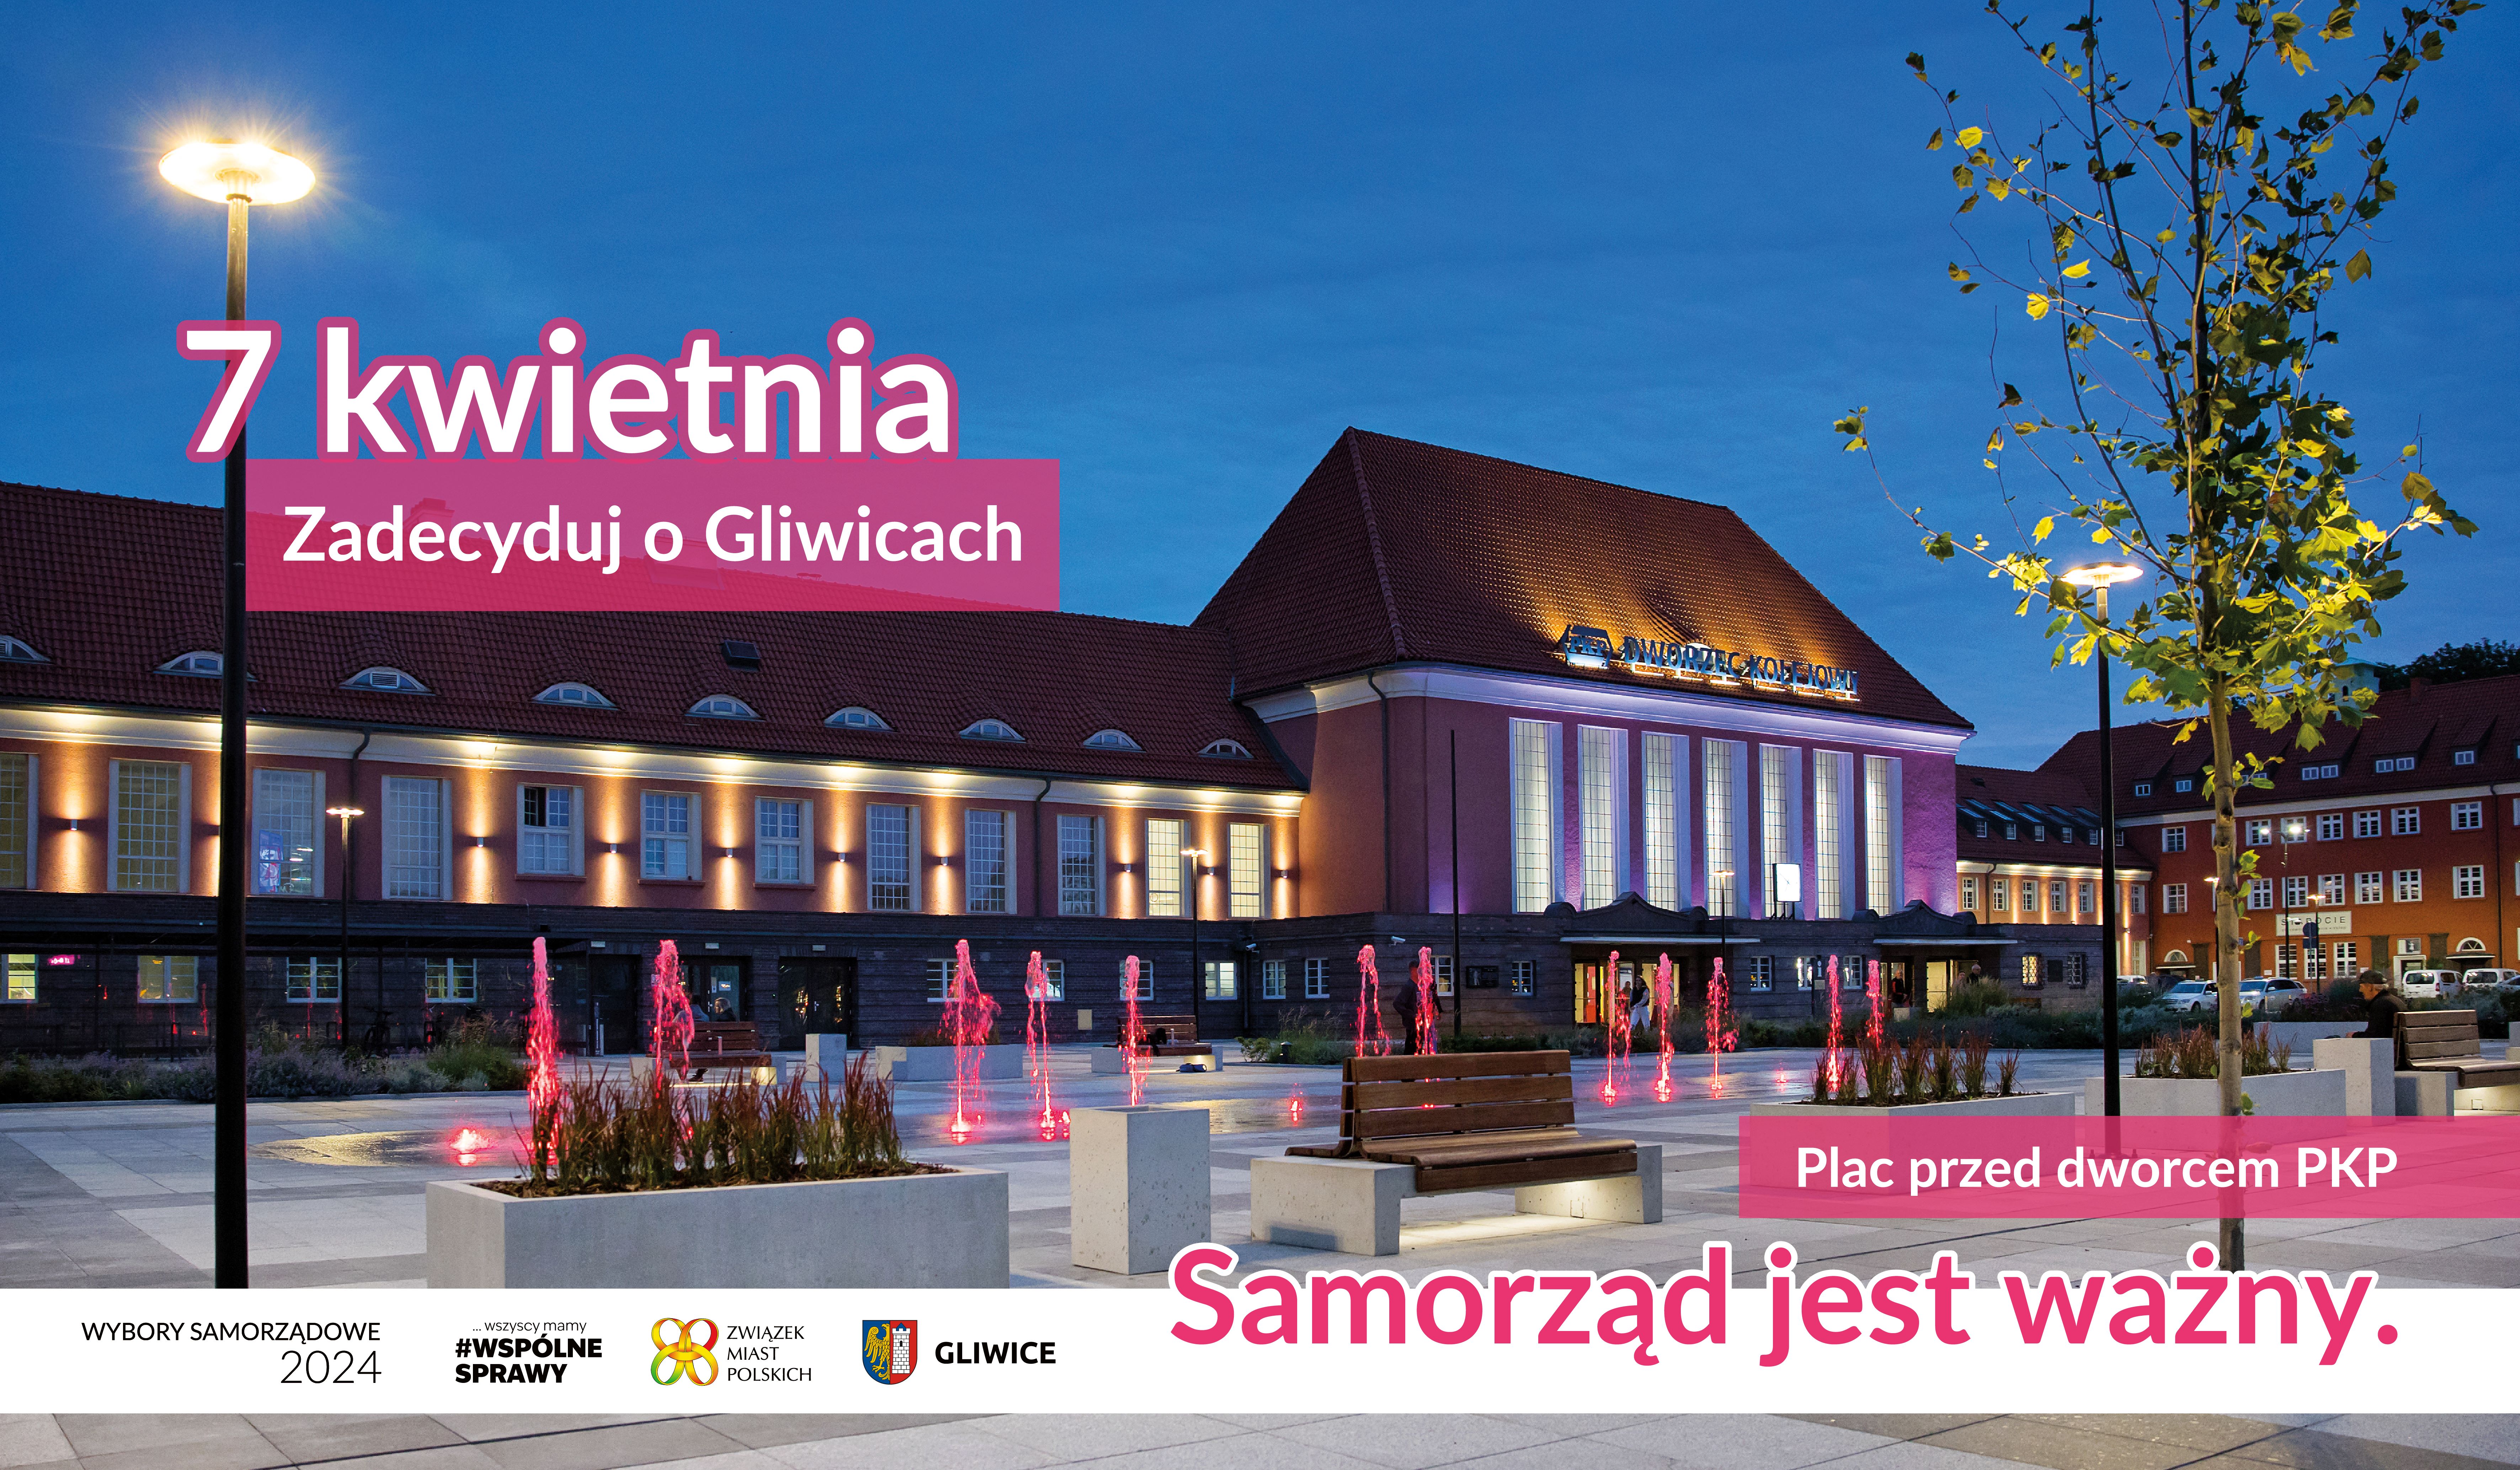 Baner ze zdjęciem placu przed dworcem i napisem 7 kwietnia zadecyduj o Gliwicach